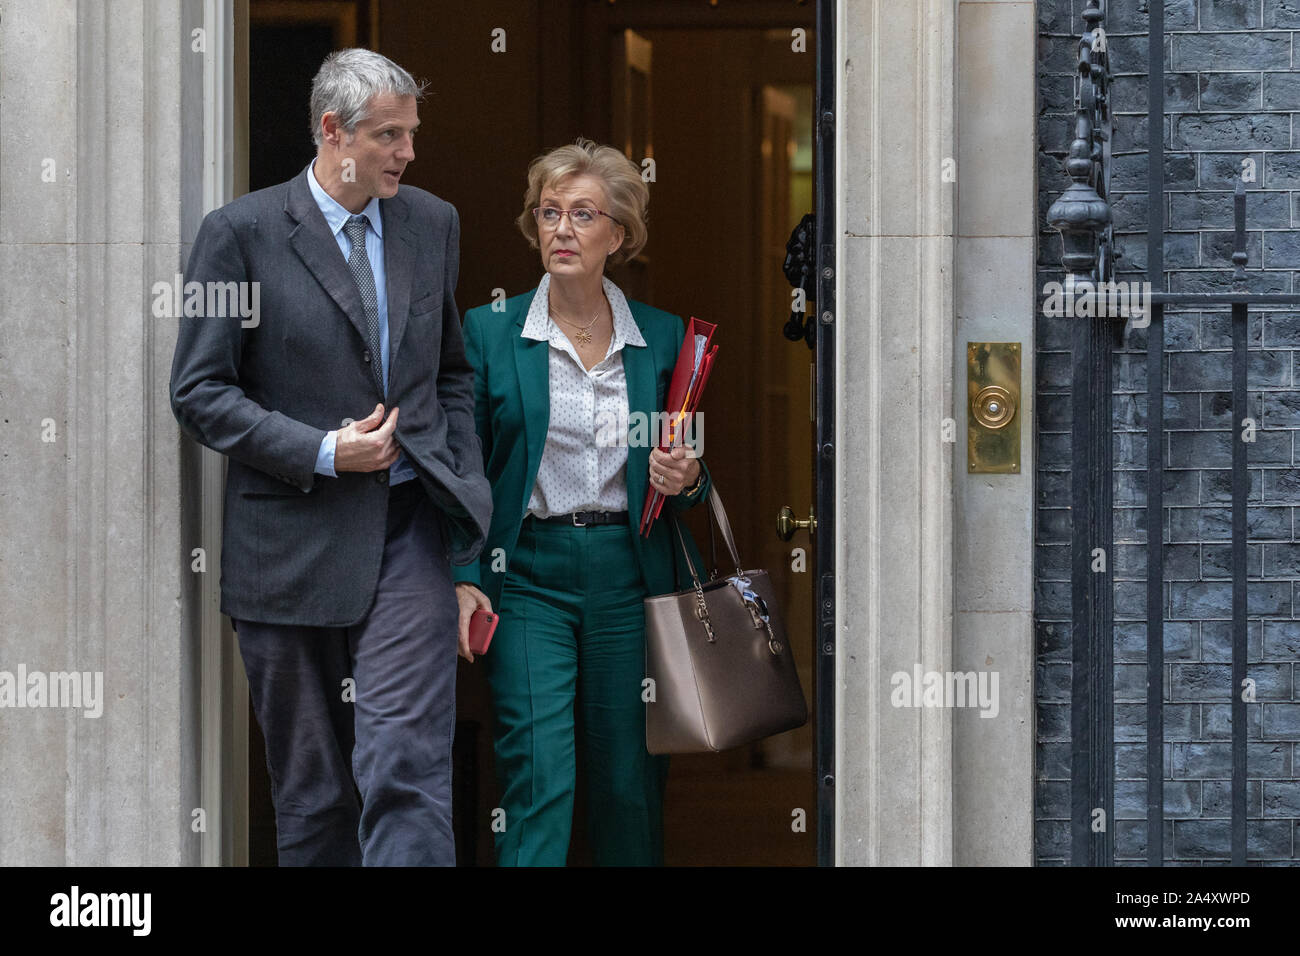 16 octobre 2019, les ministres du Cabinet arrivant au numéro 10 Downing Street, à Westminster, Londres. Banque D'Images